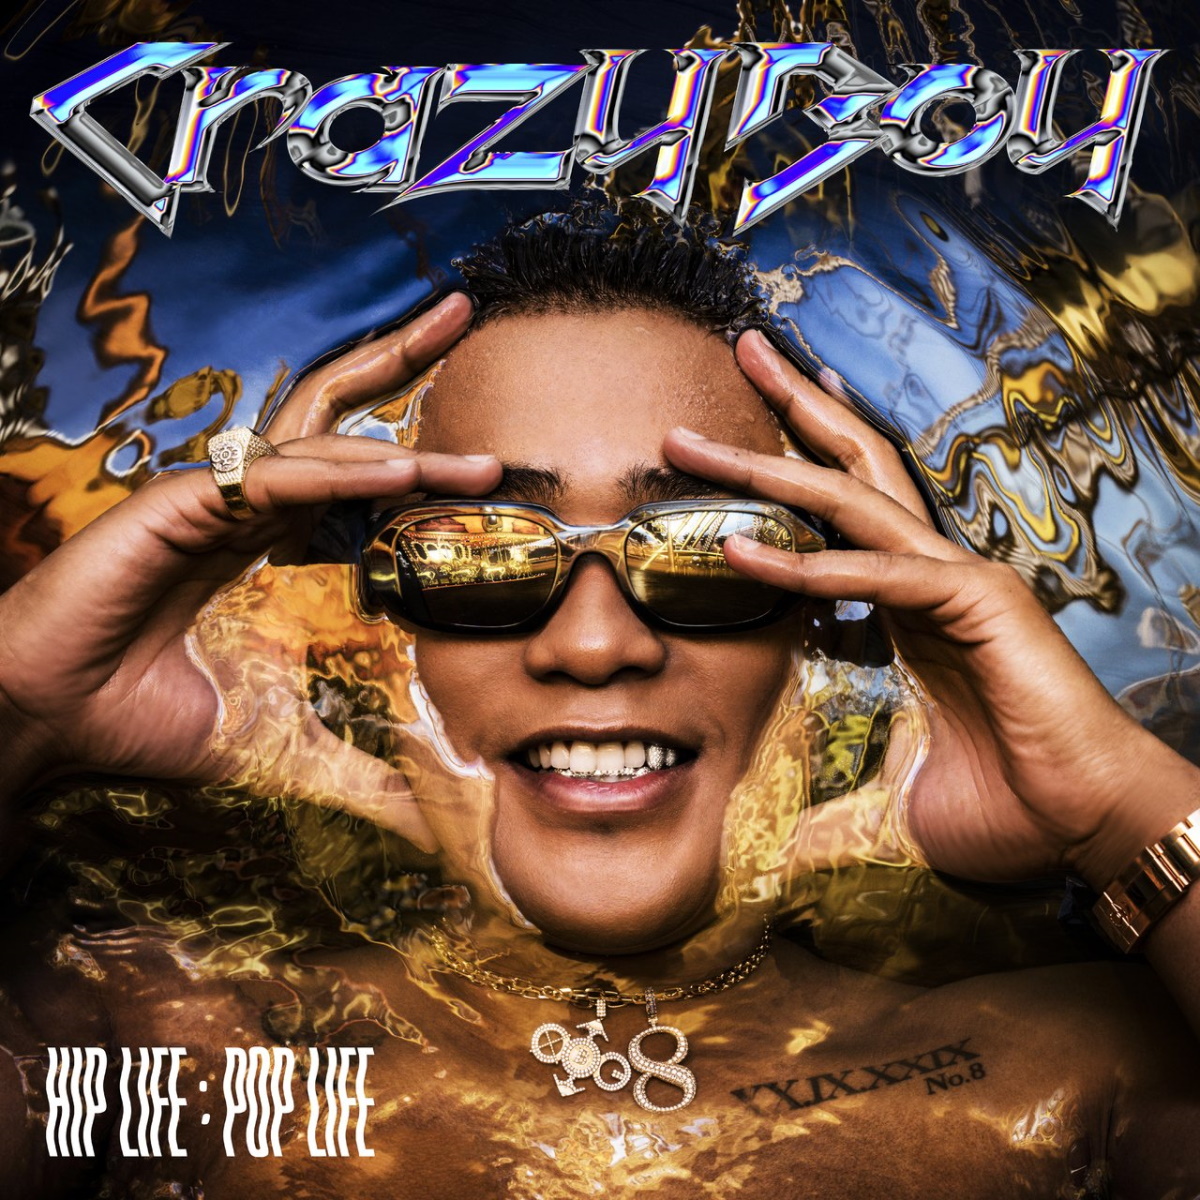 『CrazyBoy - Destiny』収録の『HIP LIFE：POP LIFE』ジャケット